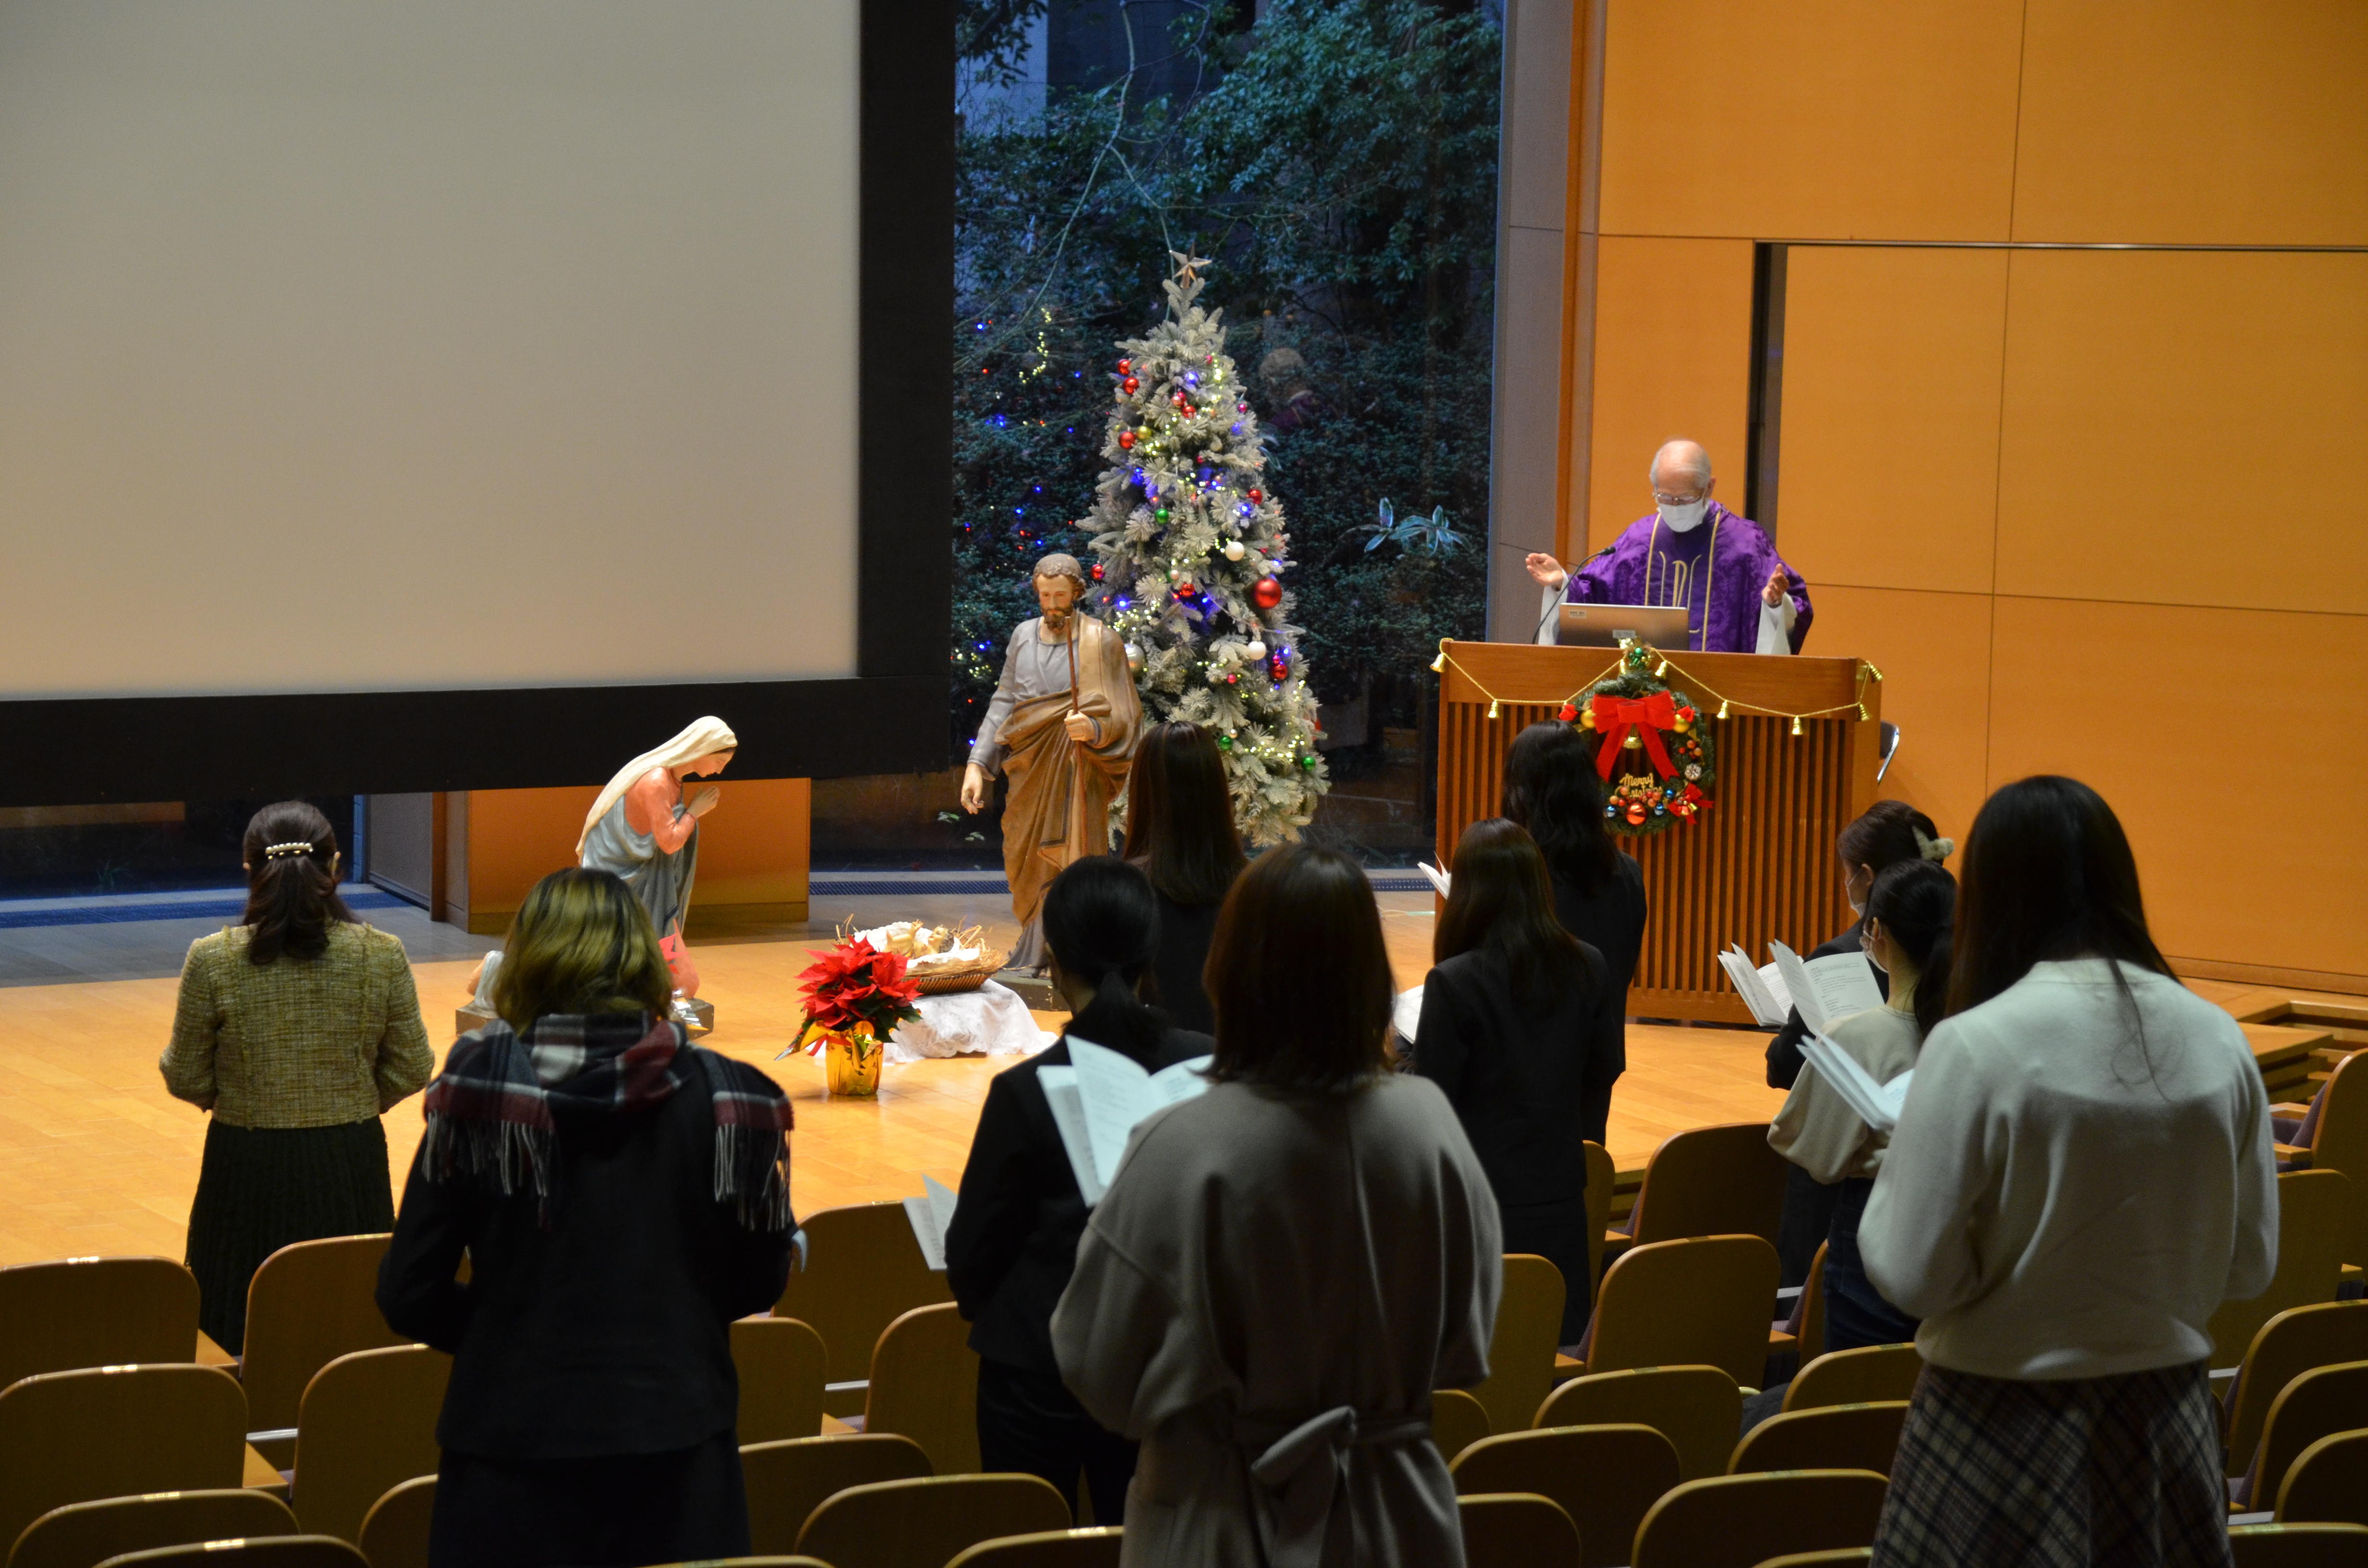 聖心女子大学がコロナ禍でもクリスマスを感じられる行事「1年次生のためのクリスマスの集い」および「クリスマスツリー点灯式」を実施 -- 12月18日には「クリスマス・オープンキャンパス」も